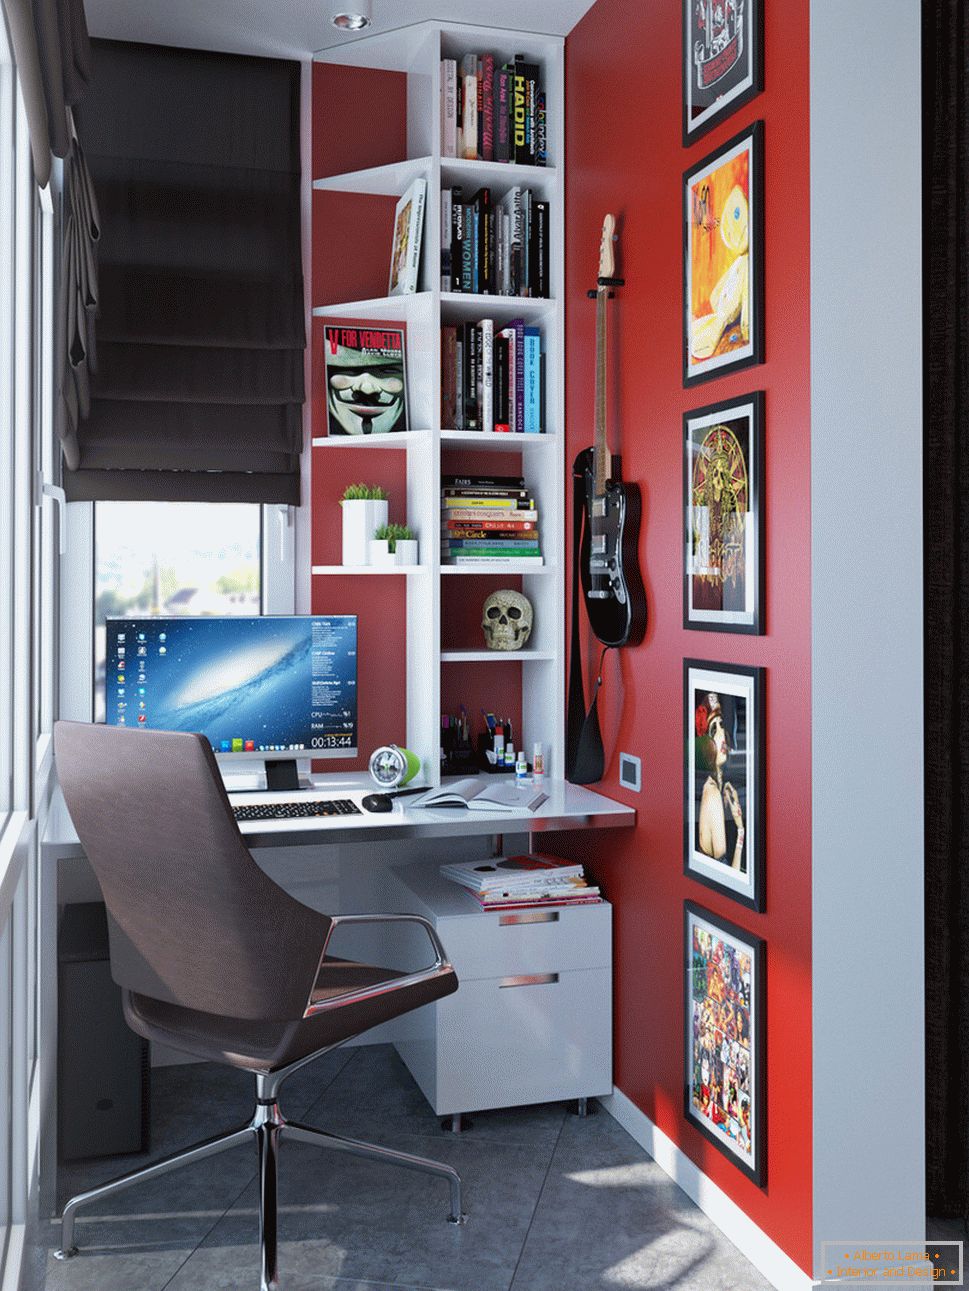 Interiér malého bytu ve světlých barvách - кабинет